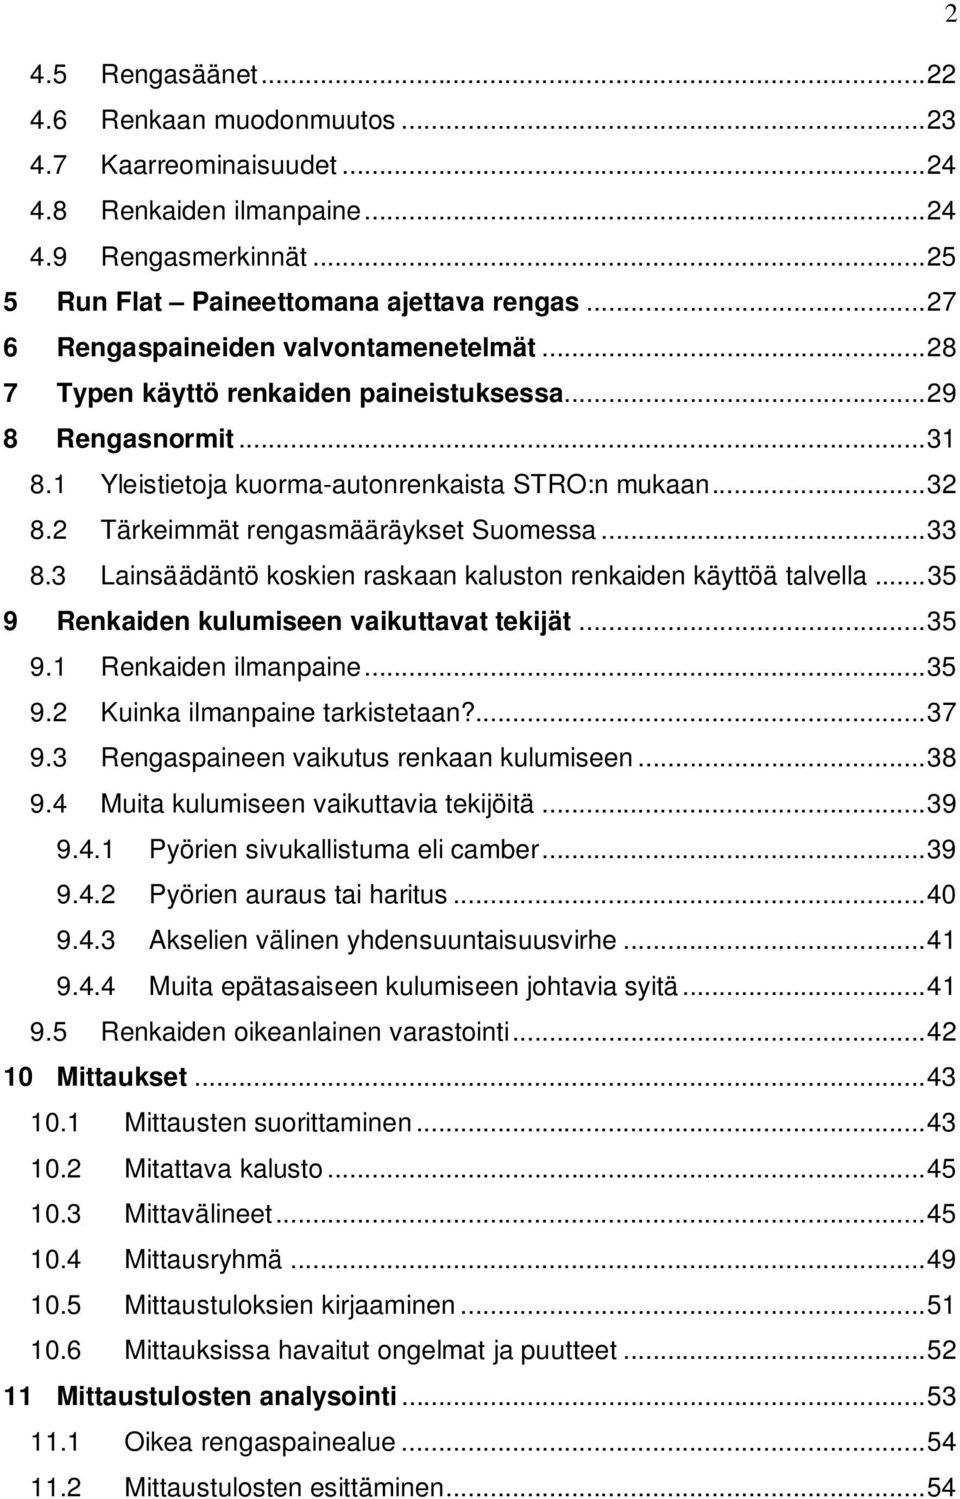 2 Tärkeimmät rengasmääräykset Suomessa... 33 8.3 Lainsäädäntö koskien raskaan kaluston renkaiden käyttöä talvella... 35 9 Renkaiden kulumiseen vaikuttavat tekijät... 35 9.1 Renkaiden ilmanpaine... 35 9.2 Kuinka ilmanpaine tarkistetaan?